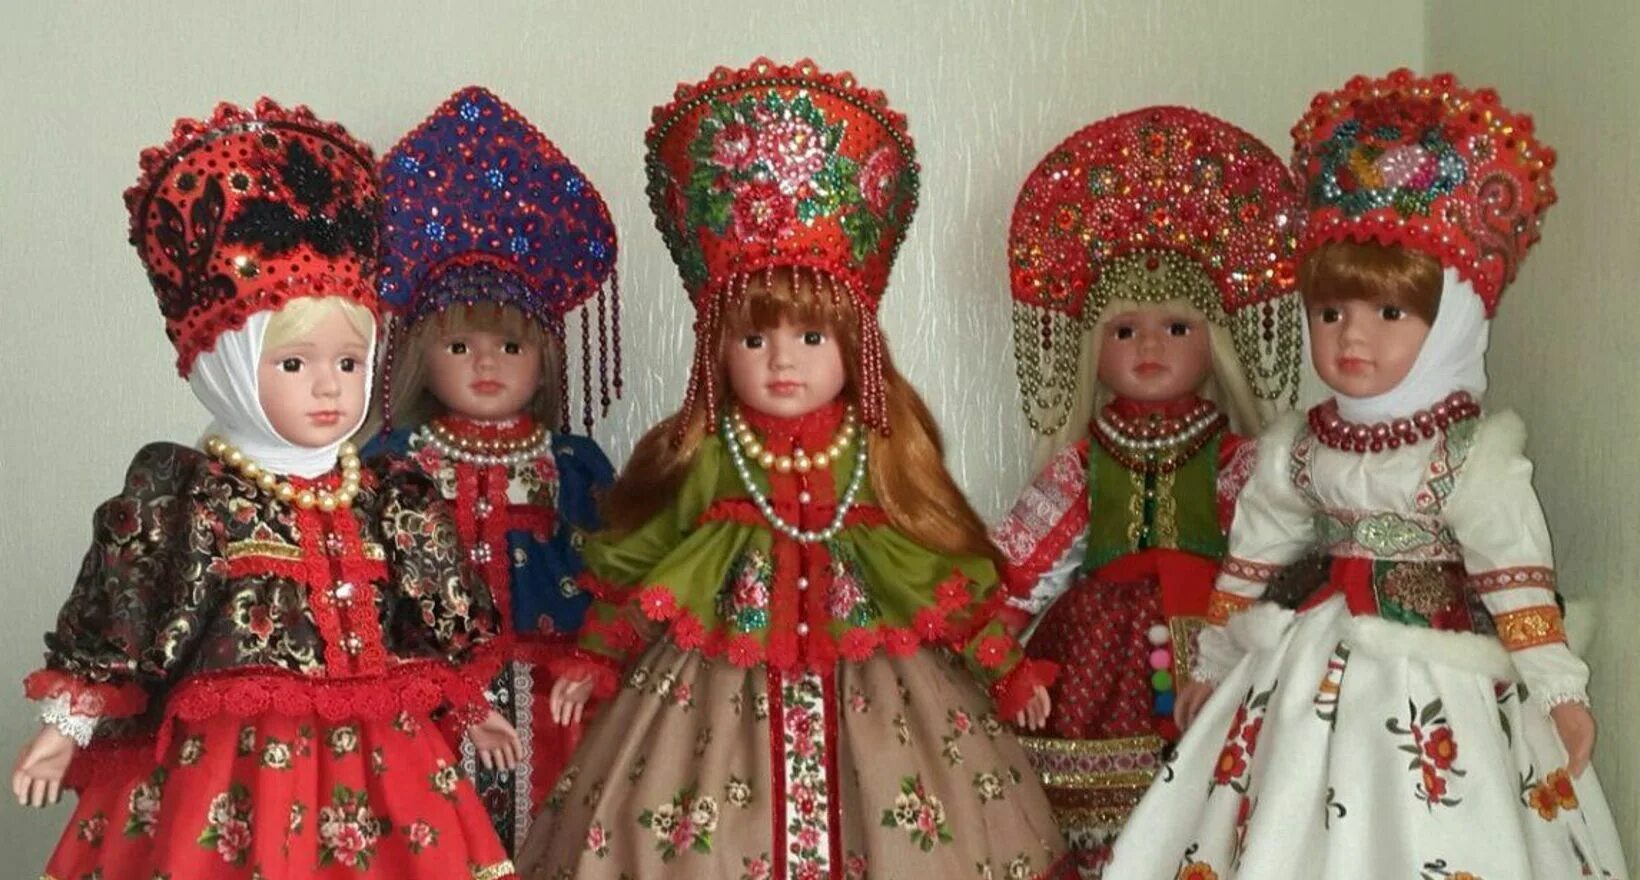 Купить кукол в национальных костюмах. Куклав руссуомкостюме. Куклы в русконородном костюме. Куклы в национальных костюмах. Кукла в русском национальном костюме.